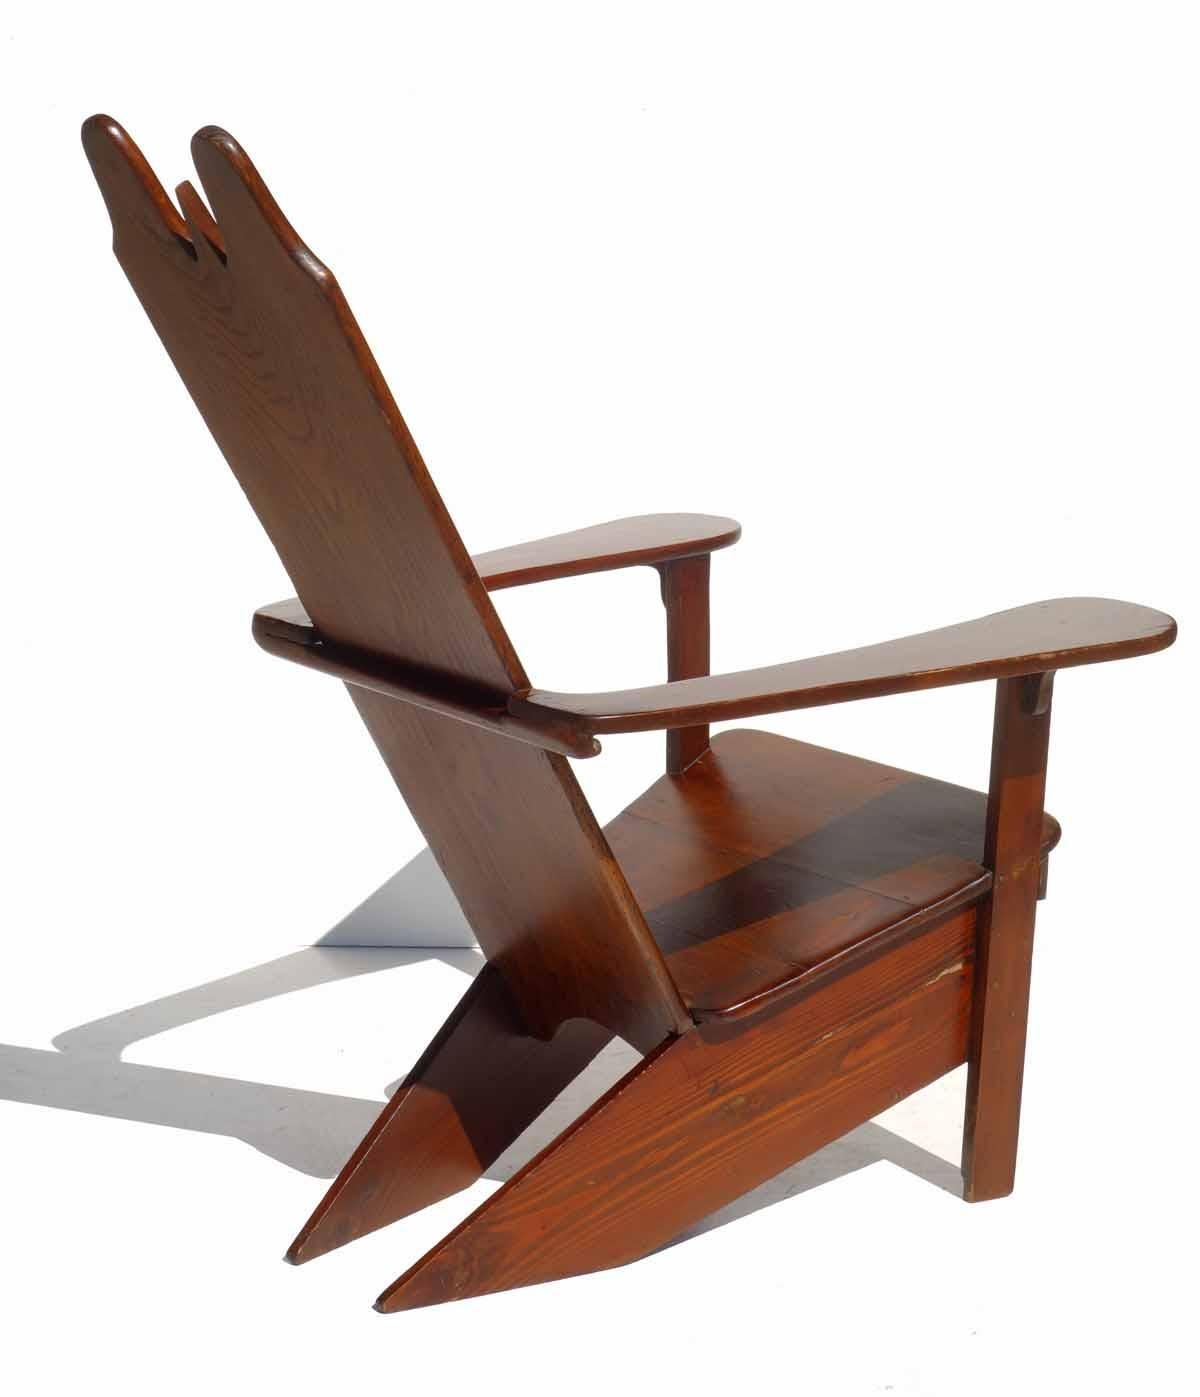 Rationalistischer Holz-Loungesessel von Gino Levi Montalcini, Italienisches Design, 1930er Jahre (Rustikal) im Angebot